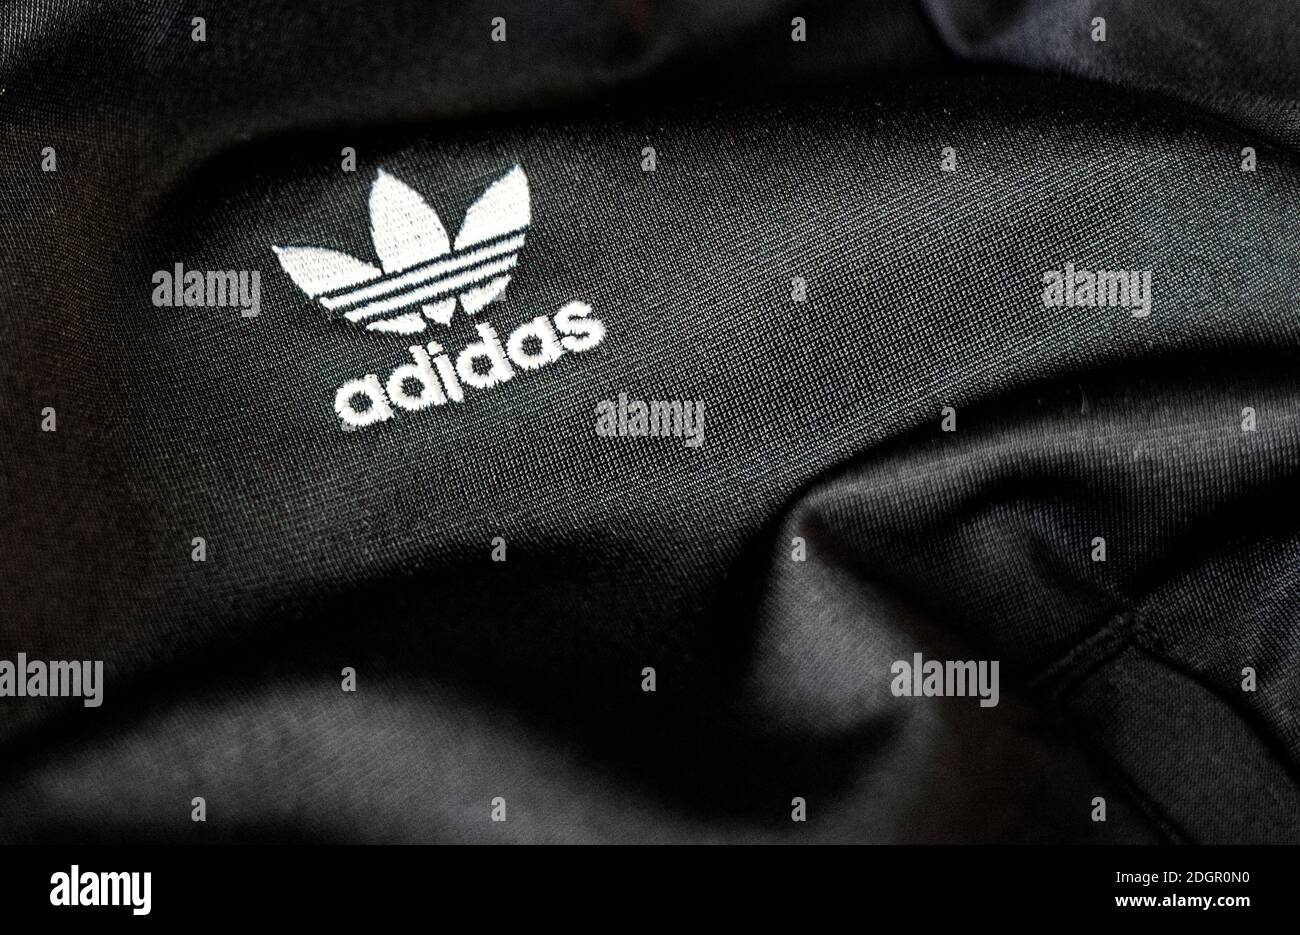 Rome, Italie, 15 novembre 2020 : le logo Adidas est cousu sur un tissu polyester noir recyclé. Vêtements de sport et logo emblématique. Célèbre marque allemande de vêtements de sport Banque D'Images